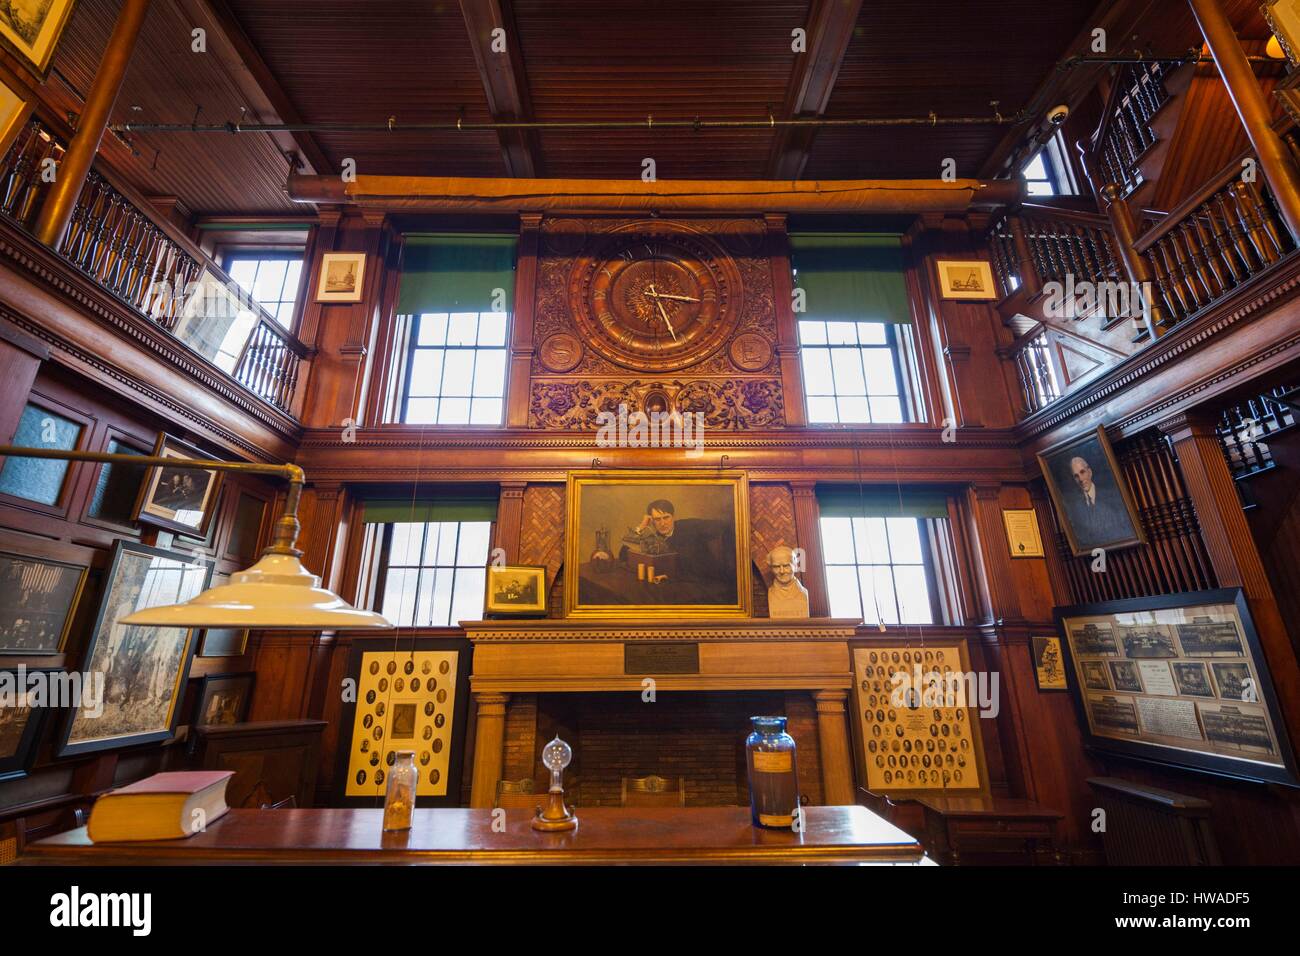 Estados Unidos, Nueva Jersey, West Orange, Thomas Edison National Historical Park, biblioteca, interior Foto de stock